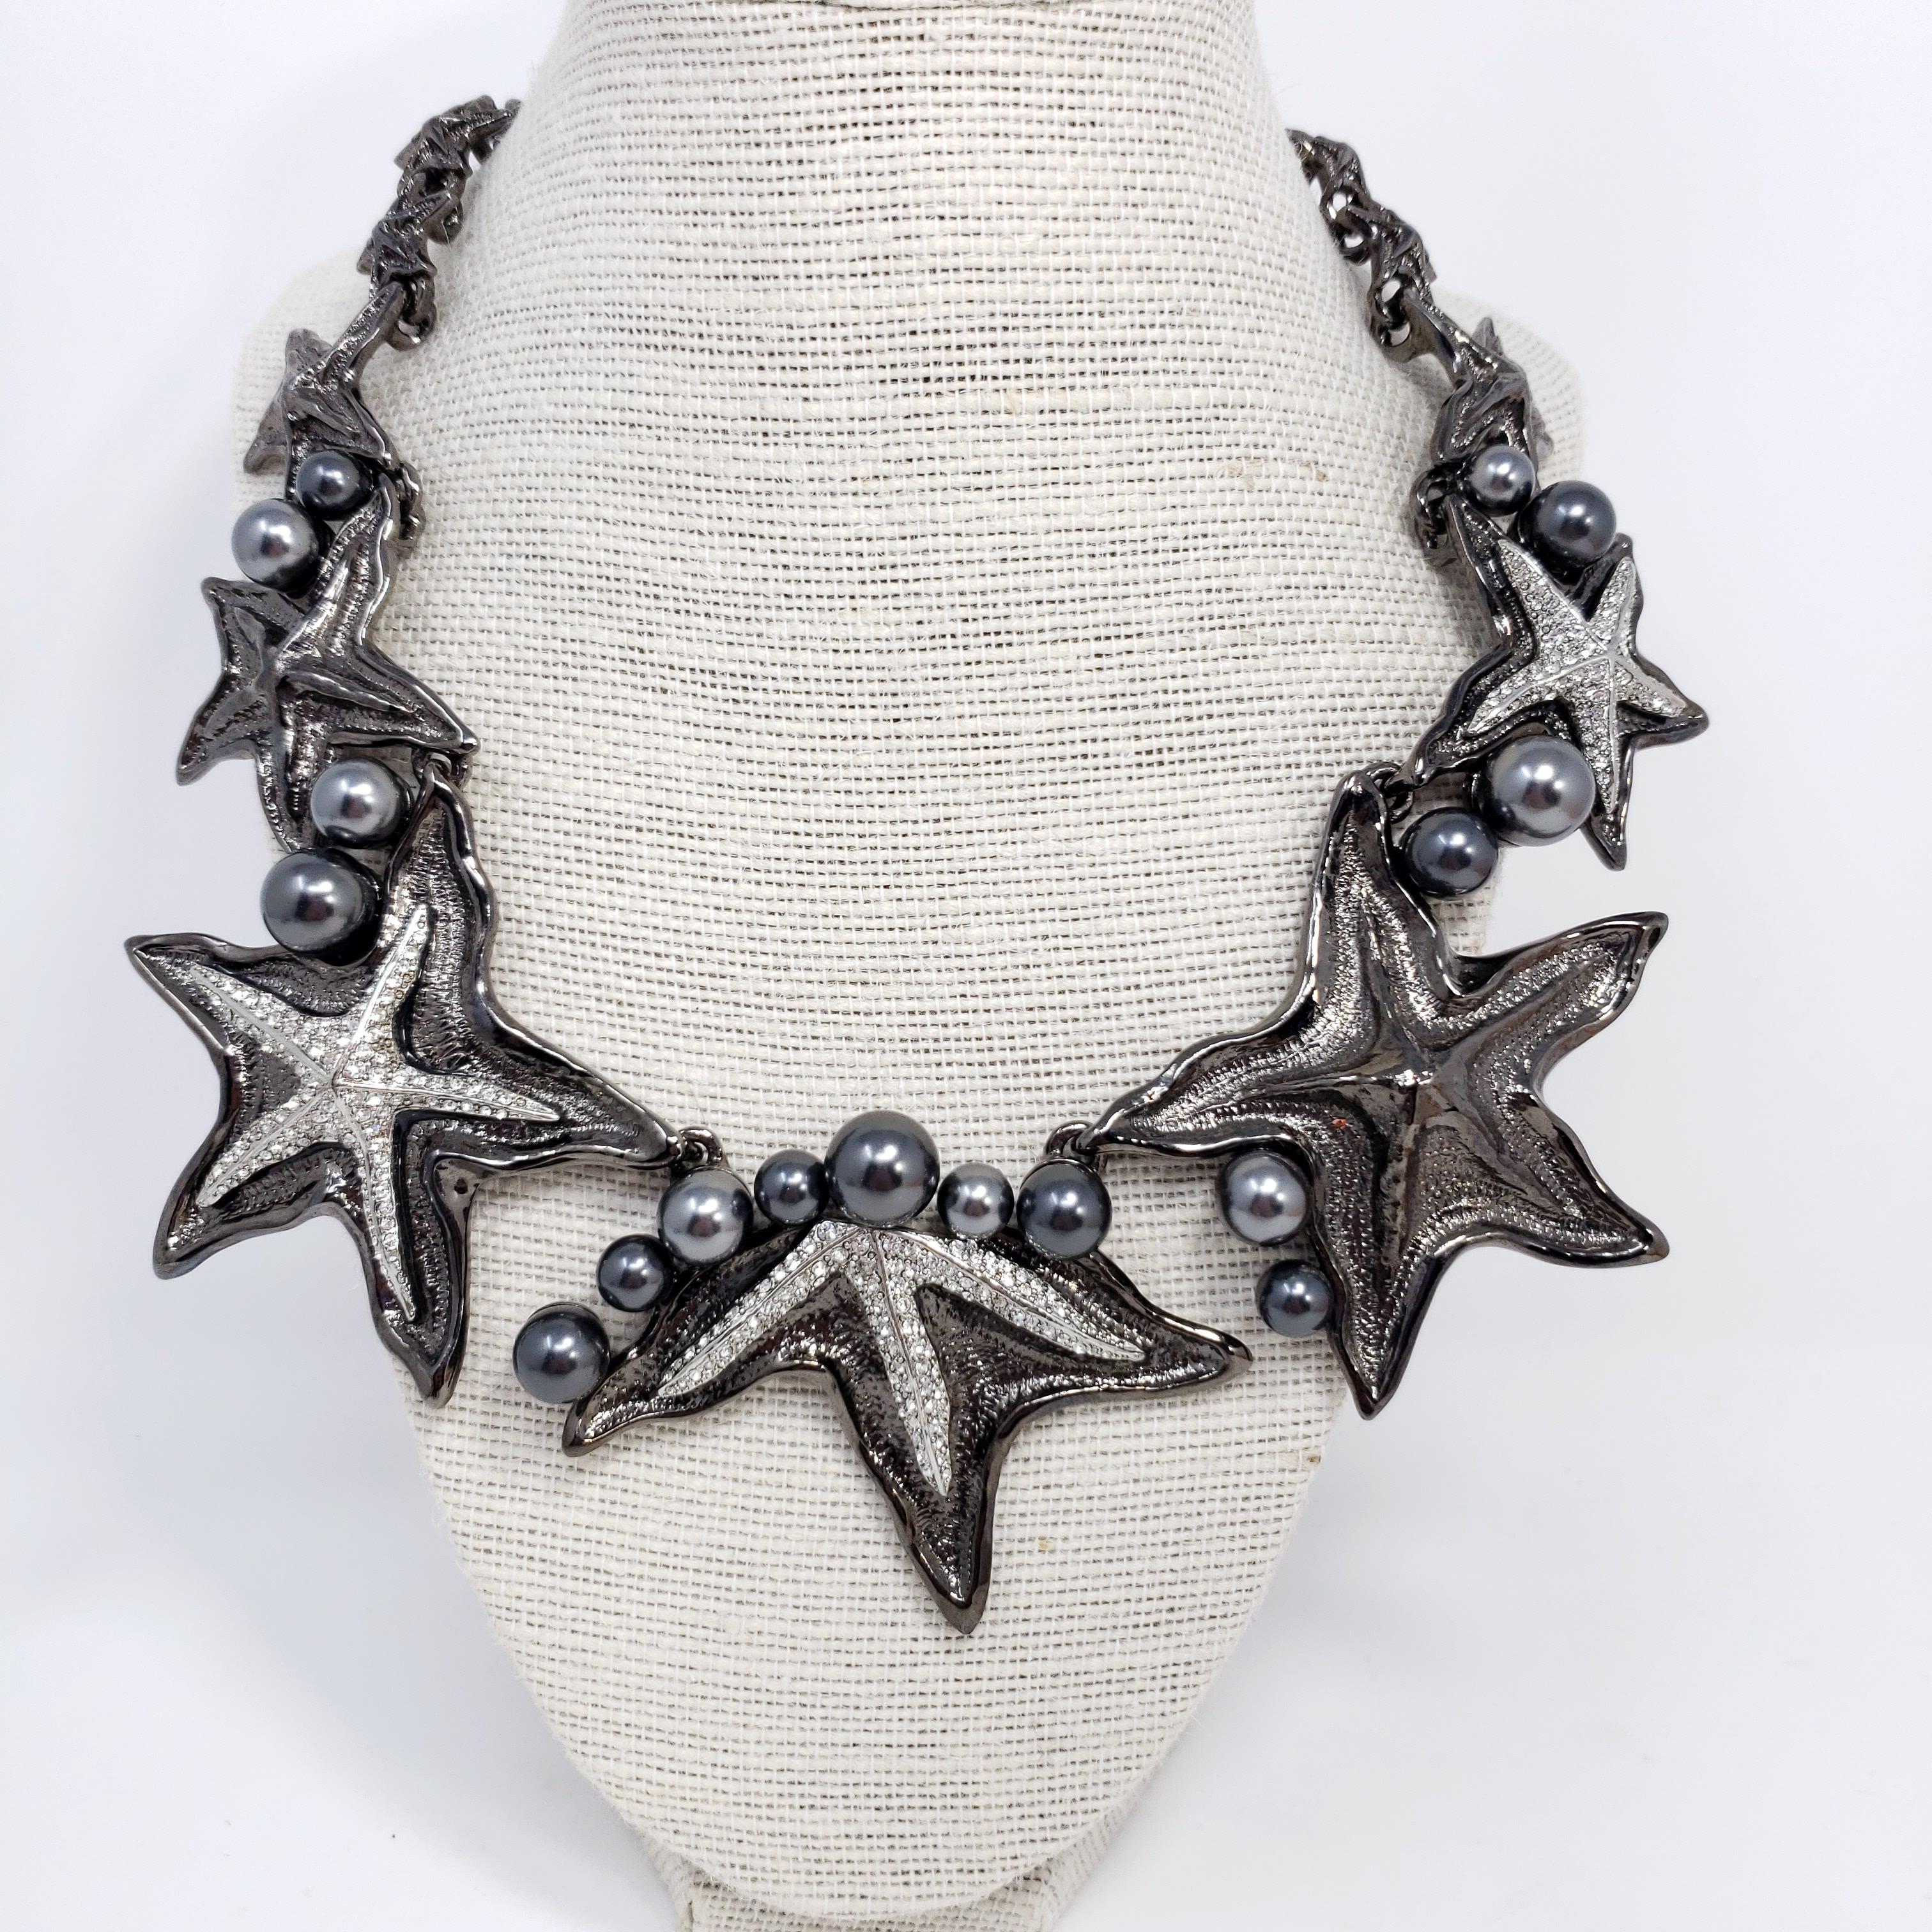 Die Halskette von Oscar de la Renta ist von der Unterwasserwelt inspiriert und sieht aus wie eine Kollektion abgestufter Seesterne. Dieses silberne und dunkelgraue Modell in Rotgussoptik ist mit funkelnden Swarovski-Perlen und -Kristallen verziert.